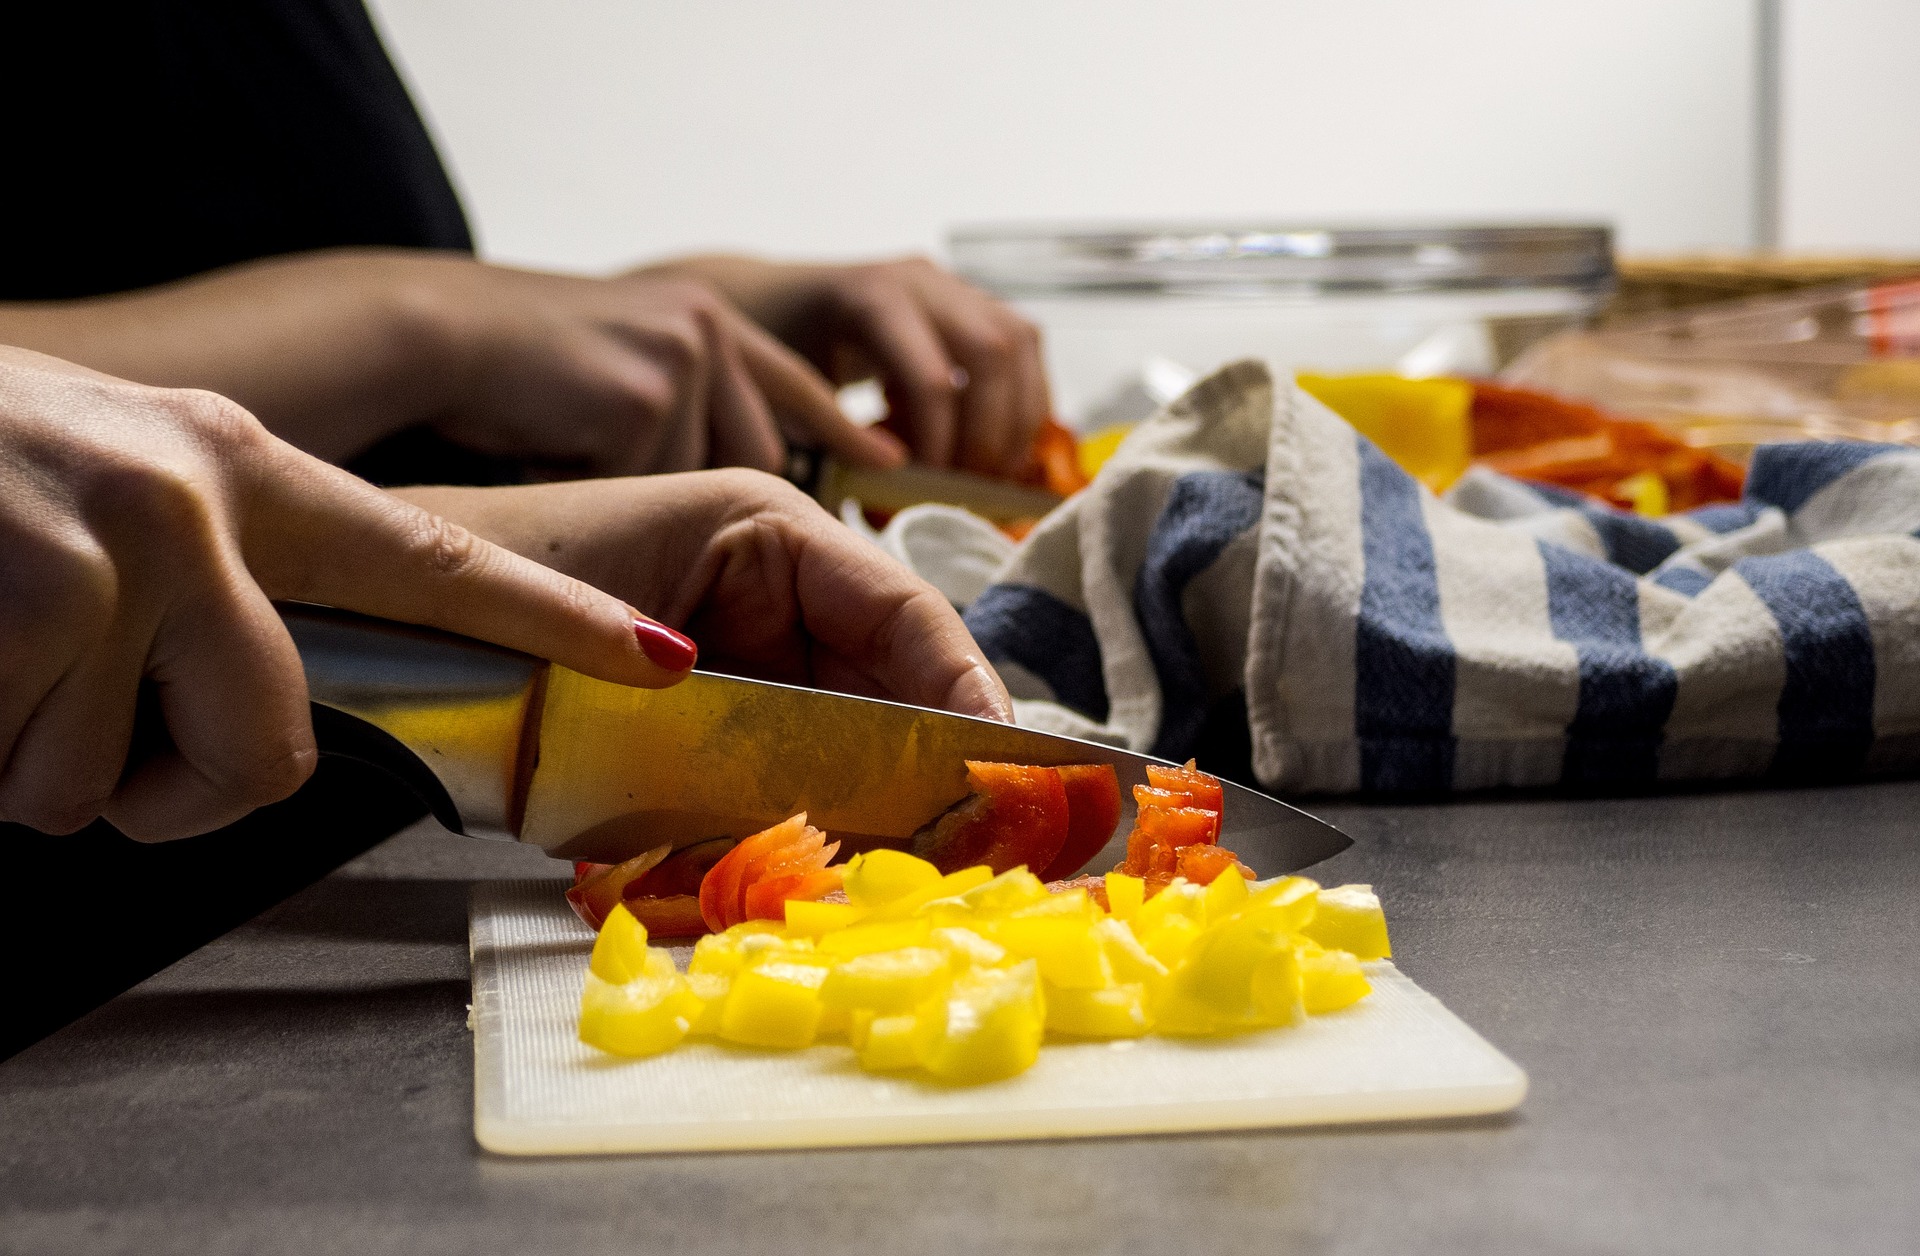 Uno de los eslabones en la cadena de seguridad alimentaria lo constituye la preparación de los alimentos en el hogar. Foto Prensa Libre: Marvorel Pixabay